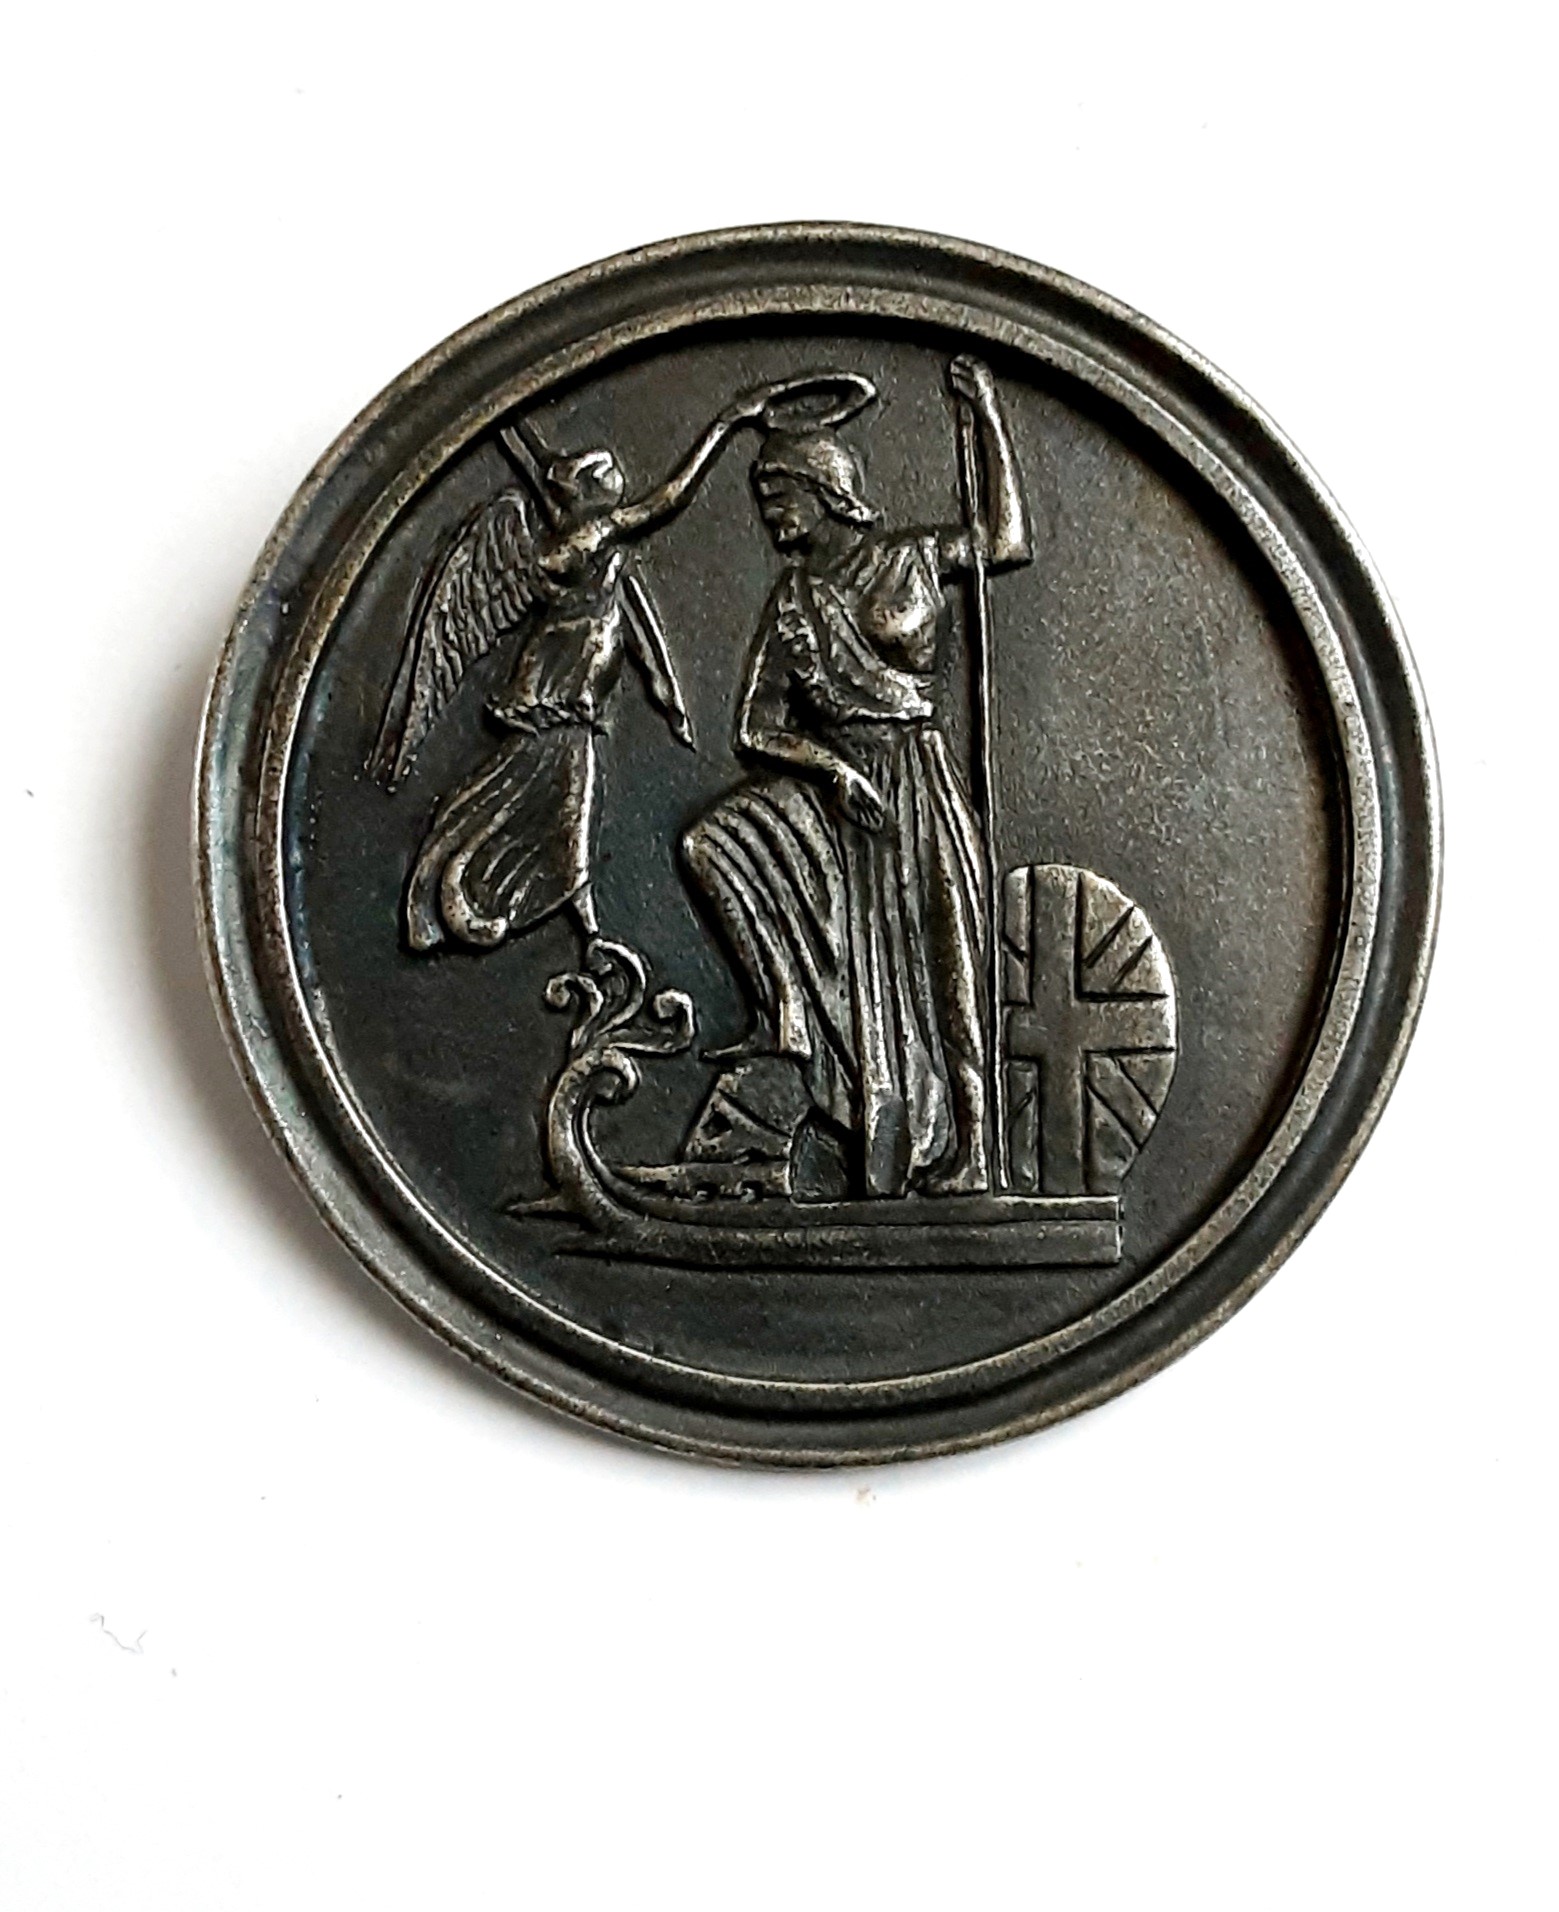 Nelson naval medal